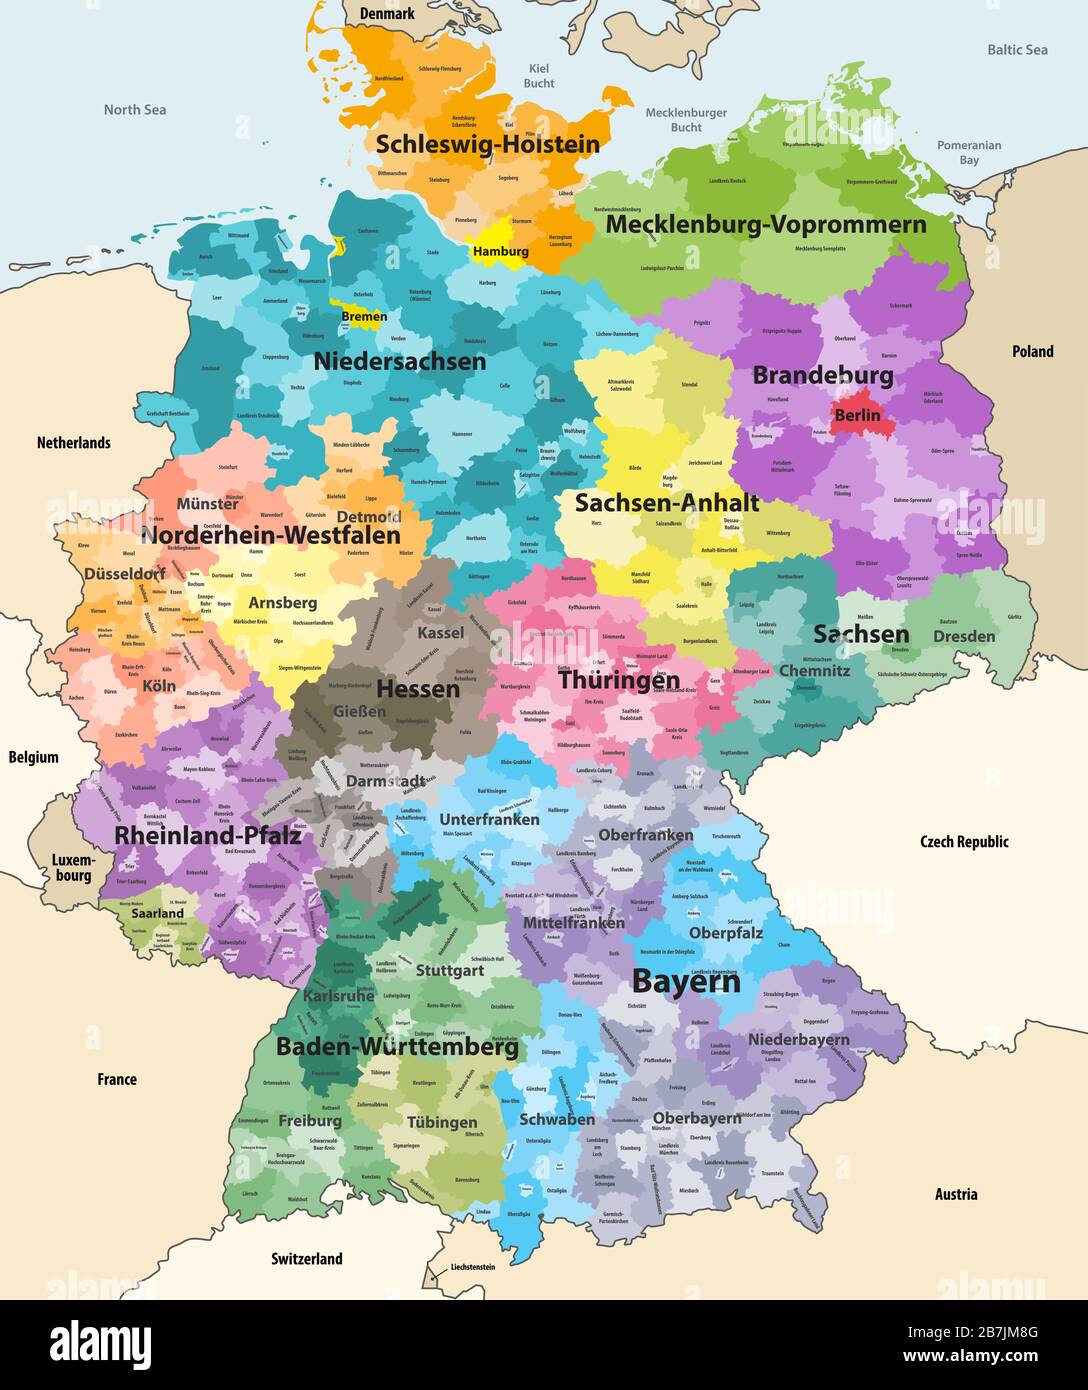 Germania mappa vettoriale dettagliata con paesi e territori vicini. Mappa colorata da stati e distretti amministrativi, con suddivisioni Illustrazione Vettoriale